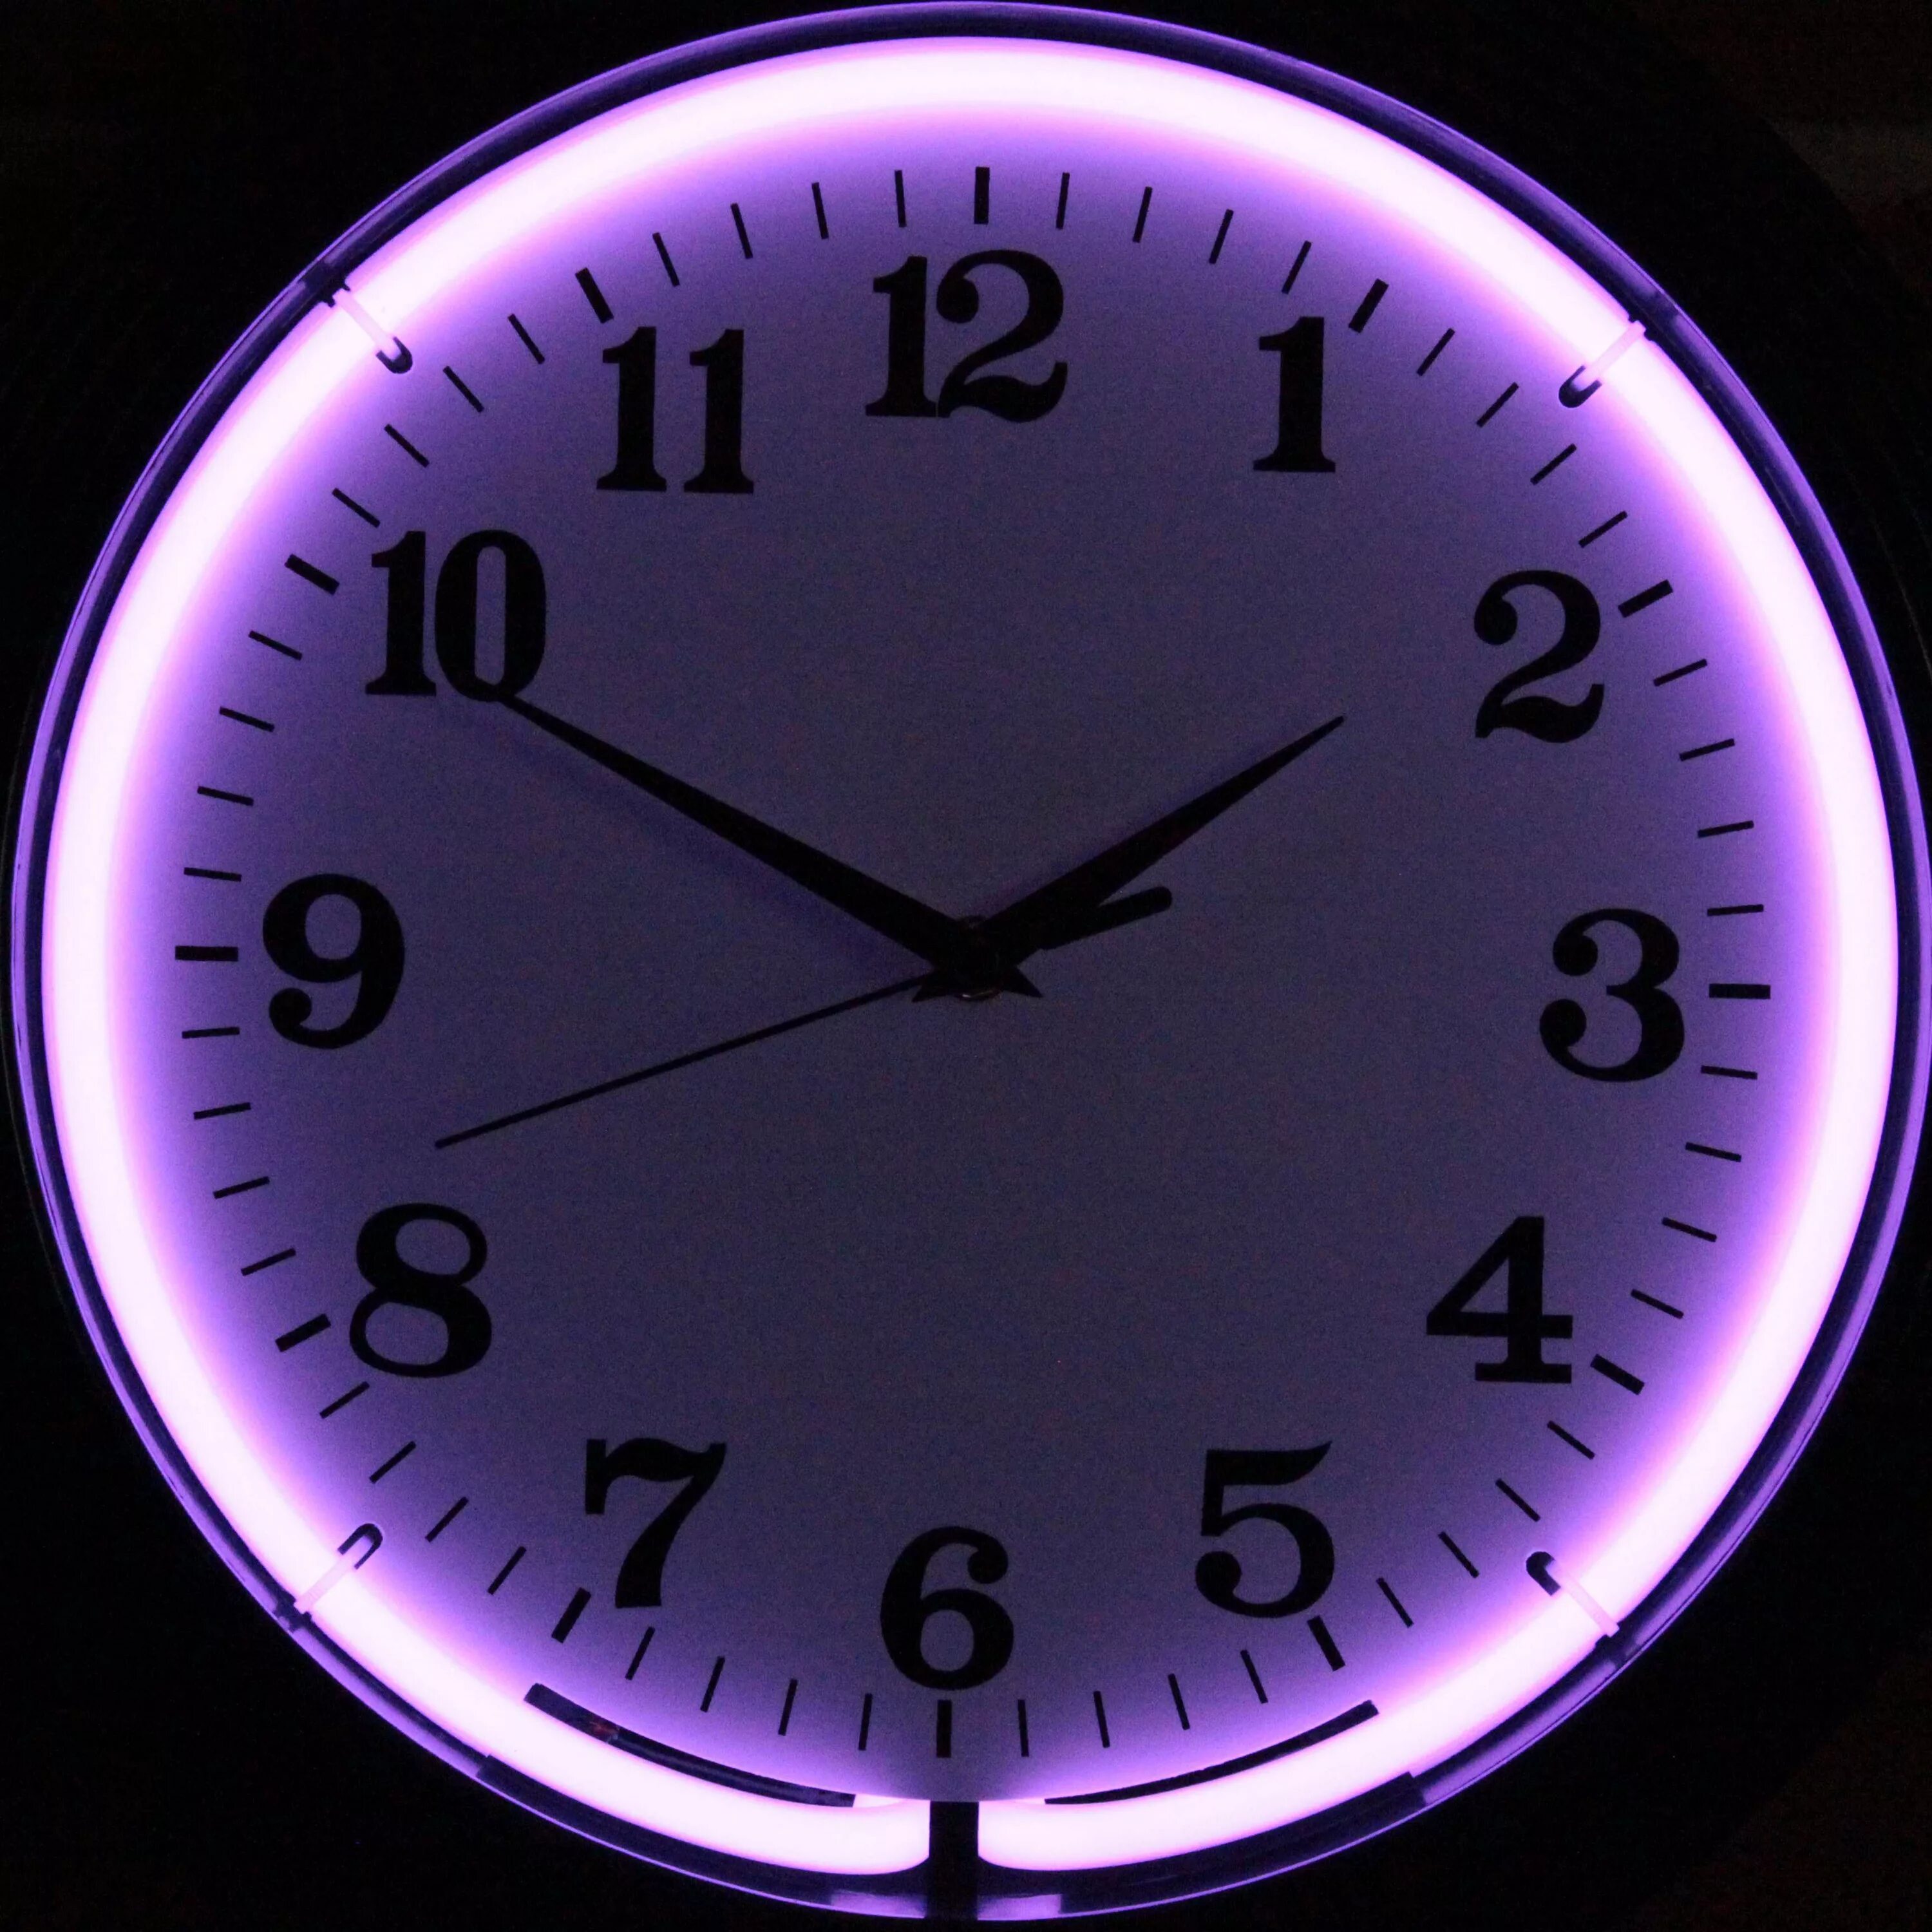 13 50 на часах. Часы фиолетовые. Красивые часы. Часы круглые. Часы циферблат.